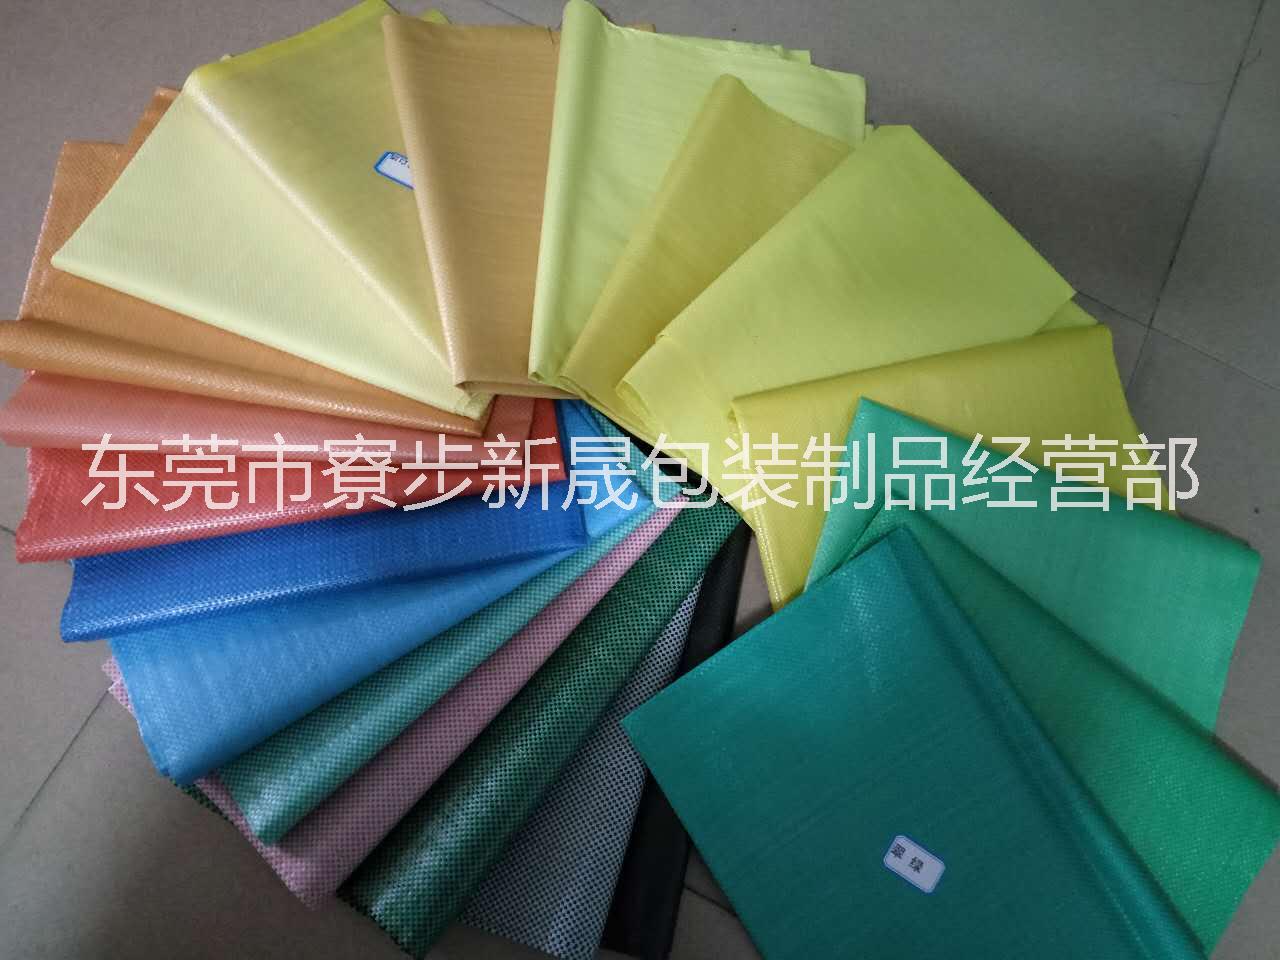 深圳厂家直销彩色编织袋、彩色腹膜编织袋